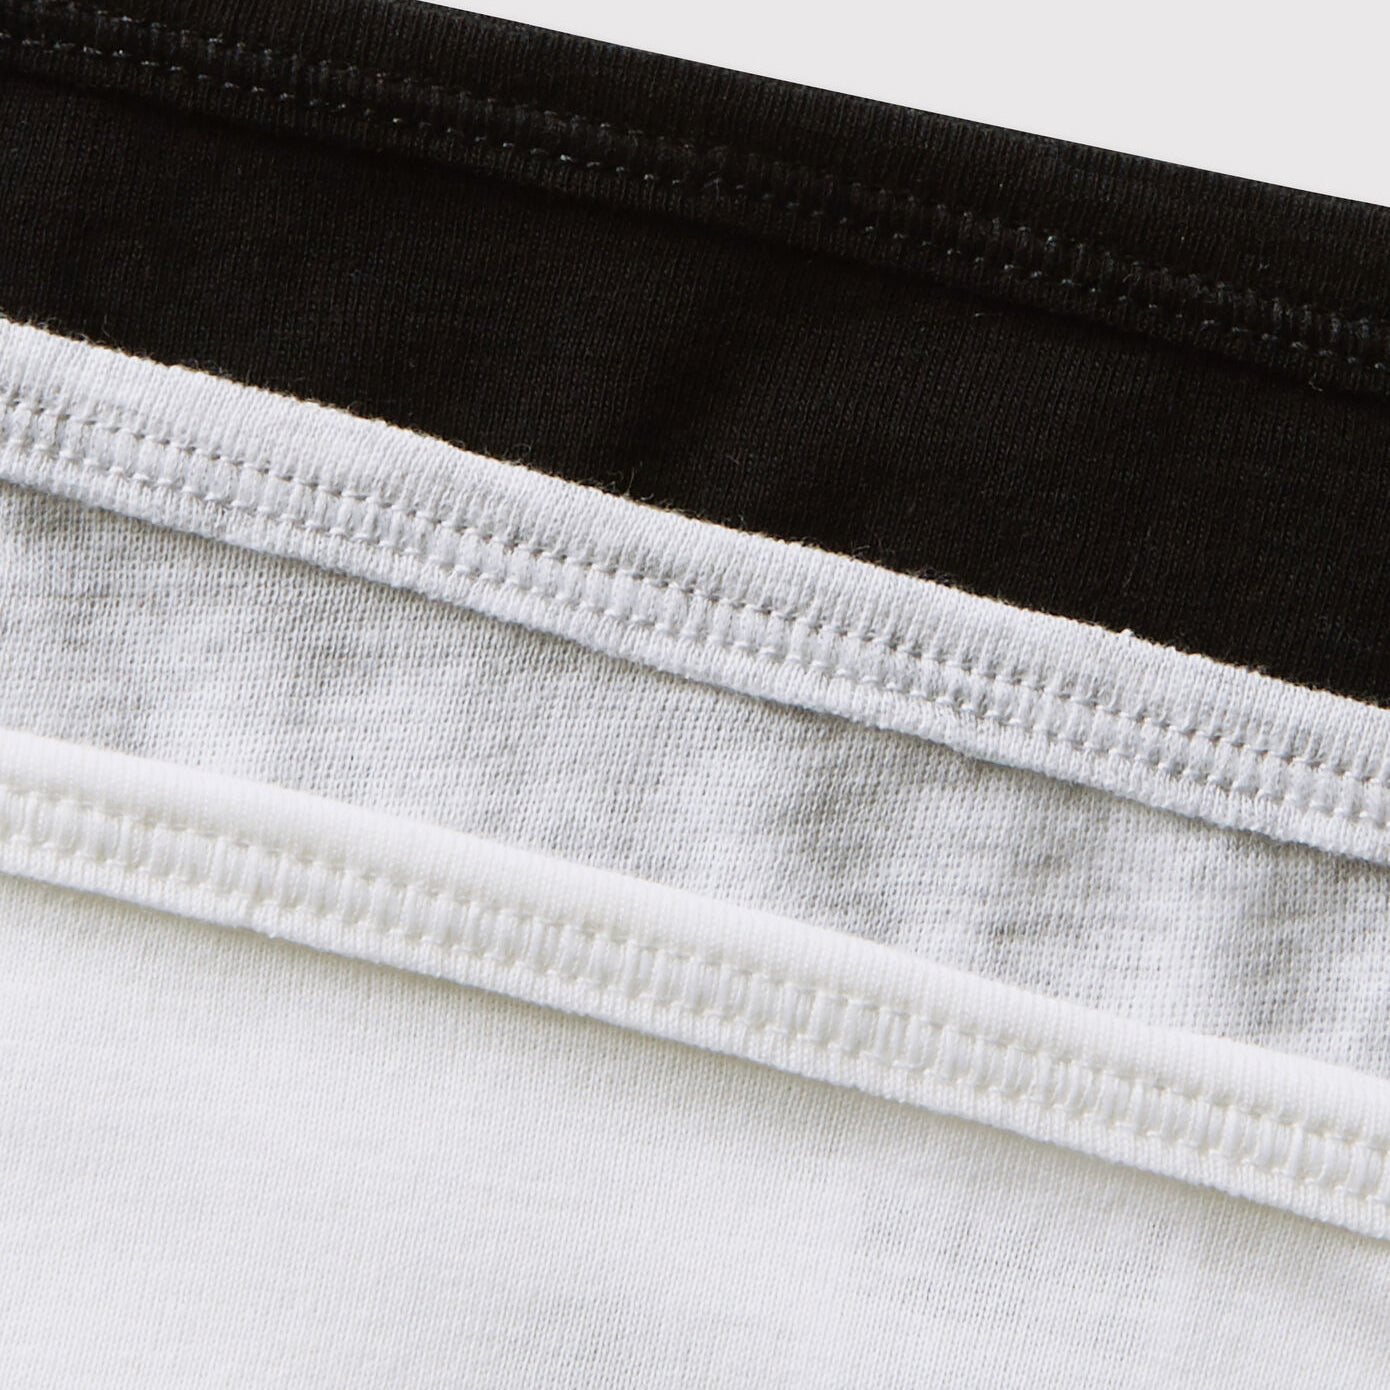 Girls White Cotton Underwear Set(3 Pack)